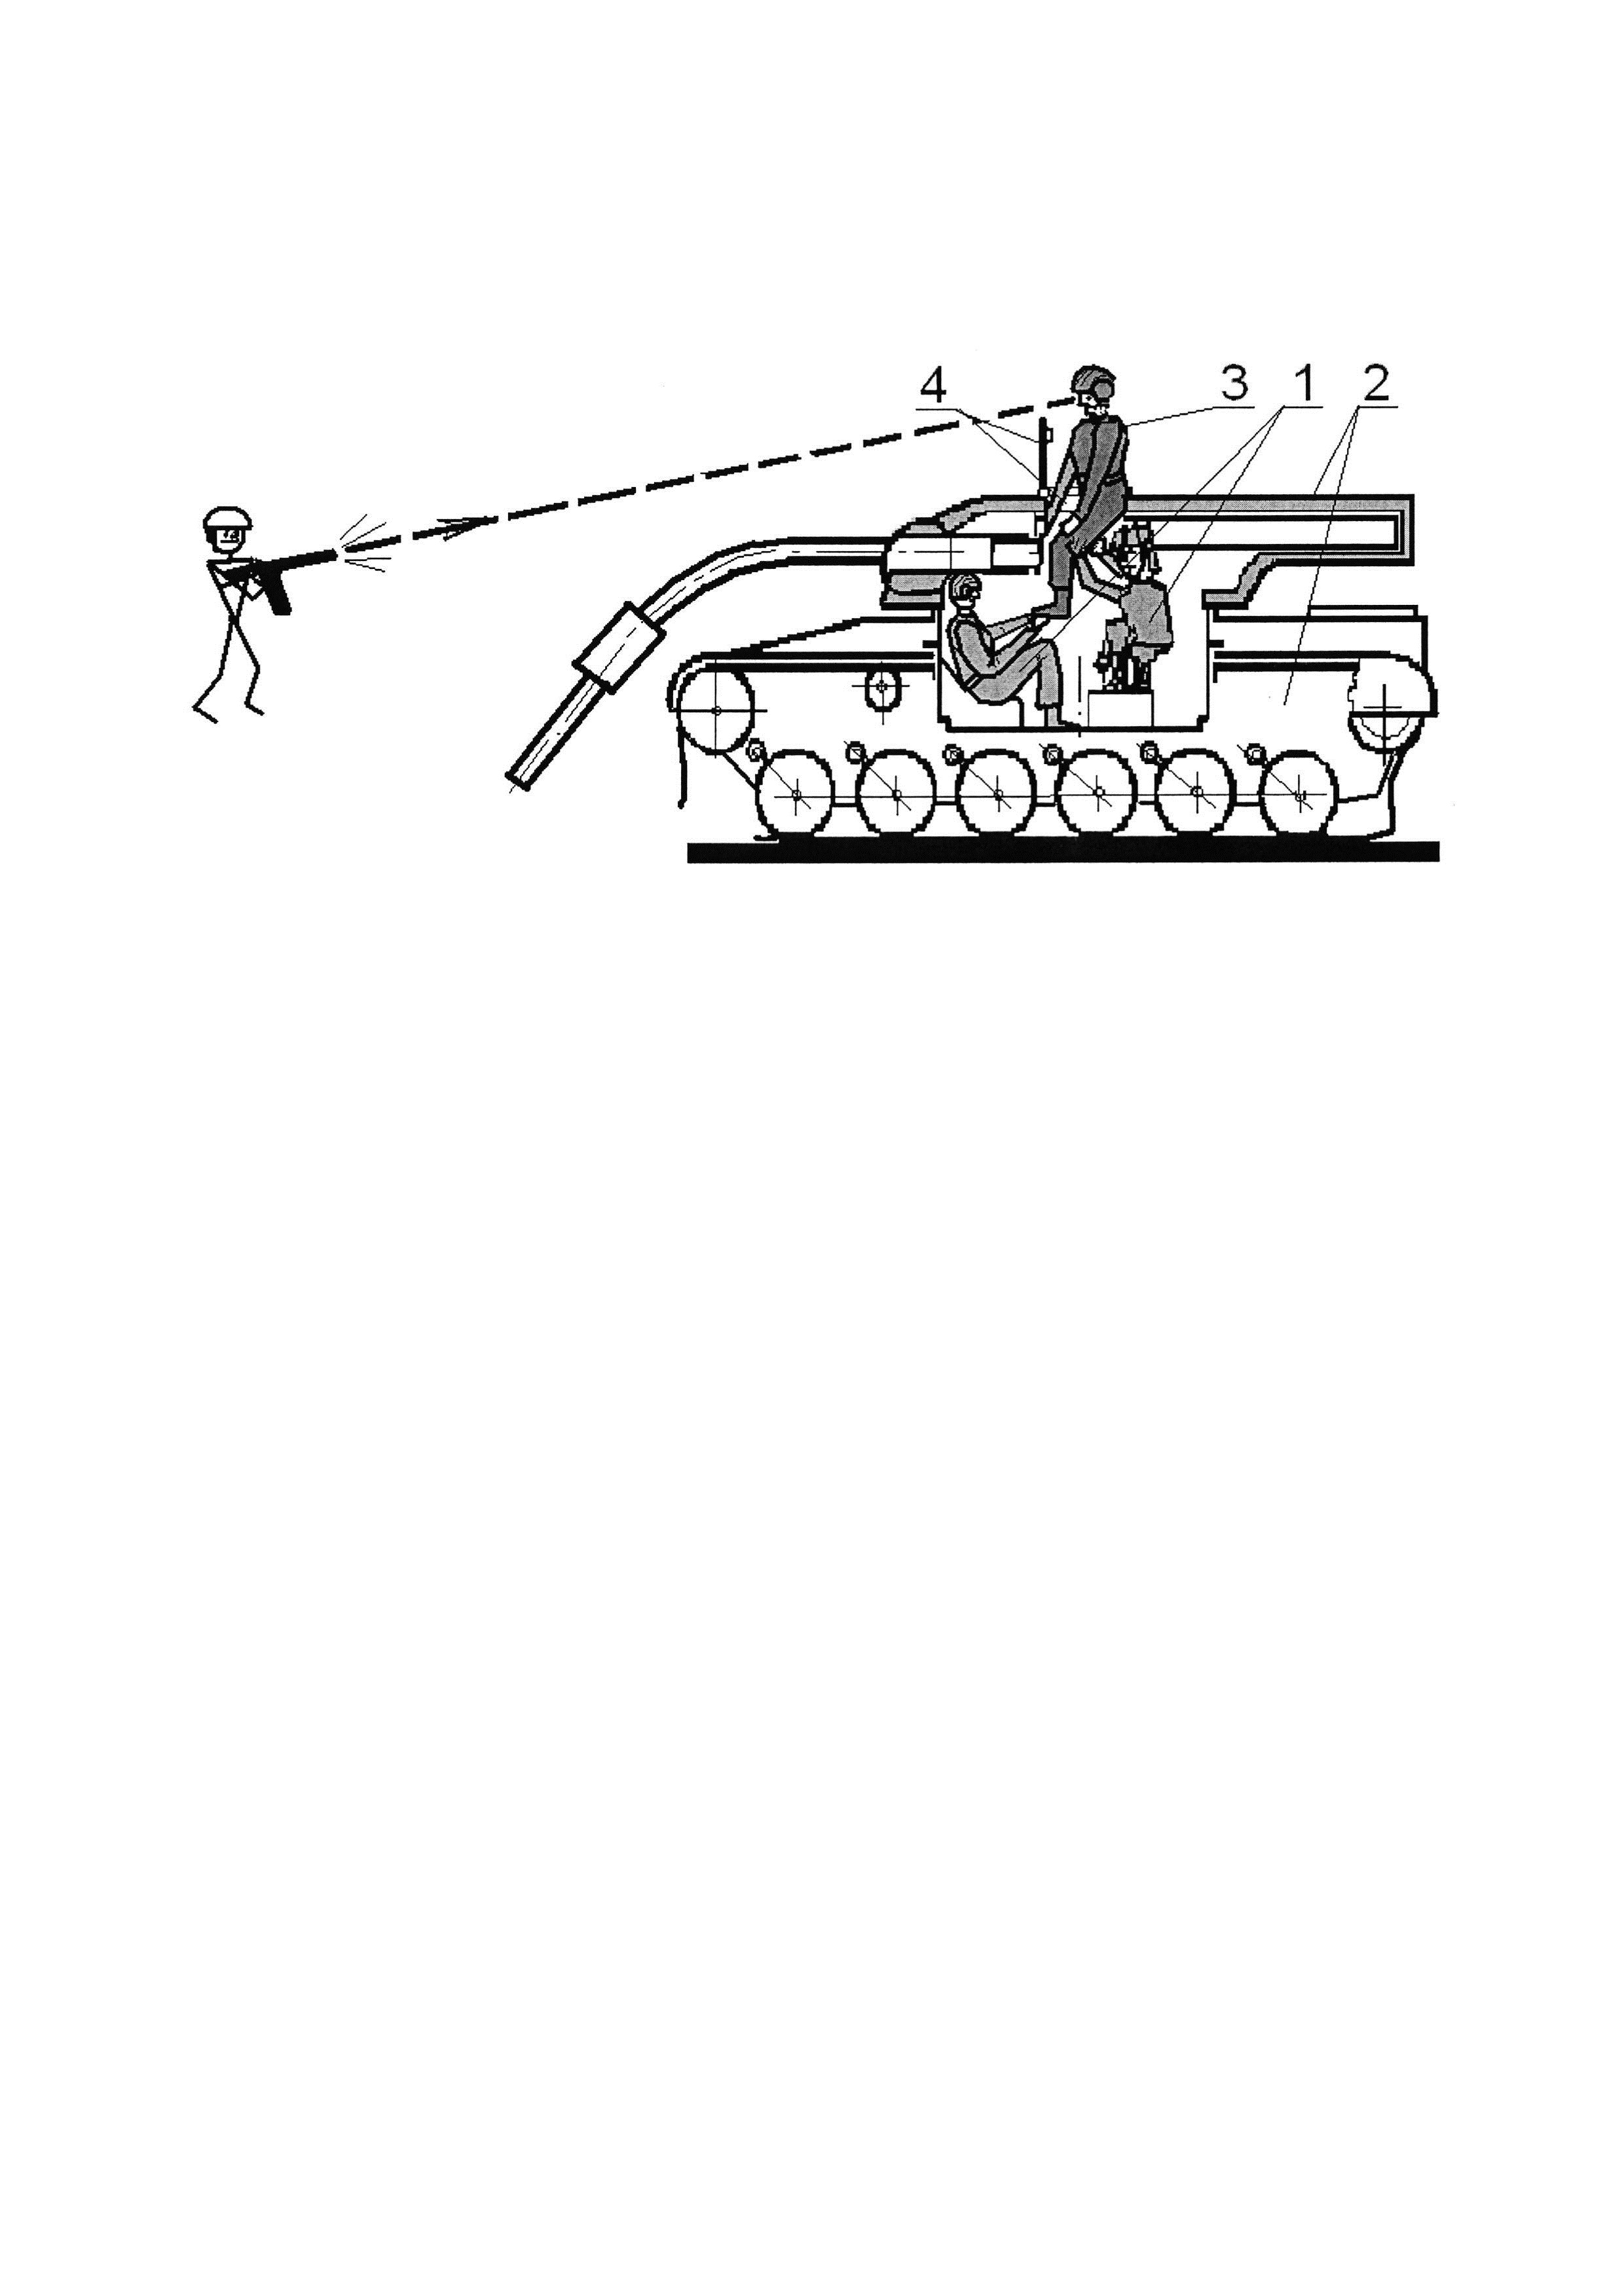 Способ эвакуации экипажа из танка или бронетранспортера